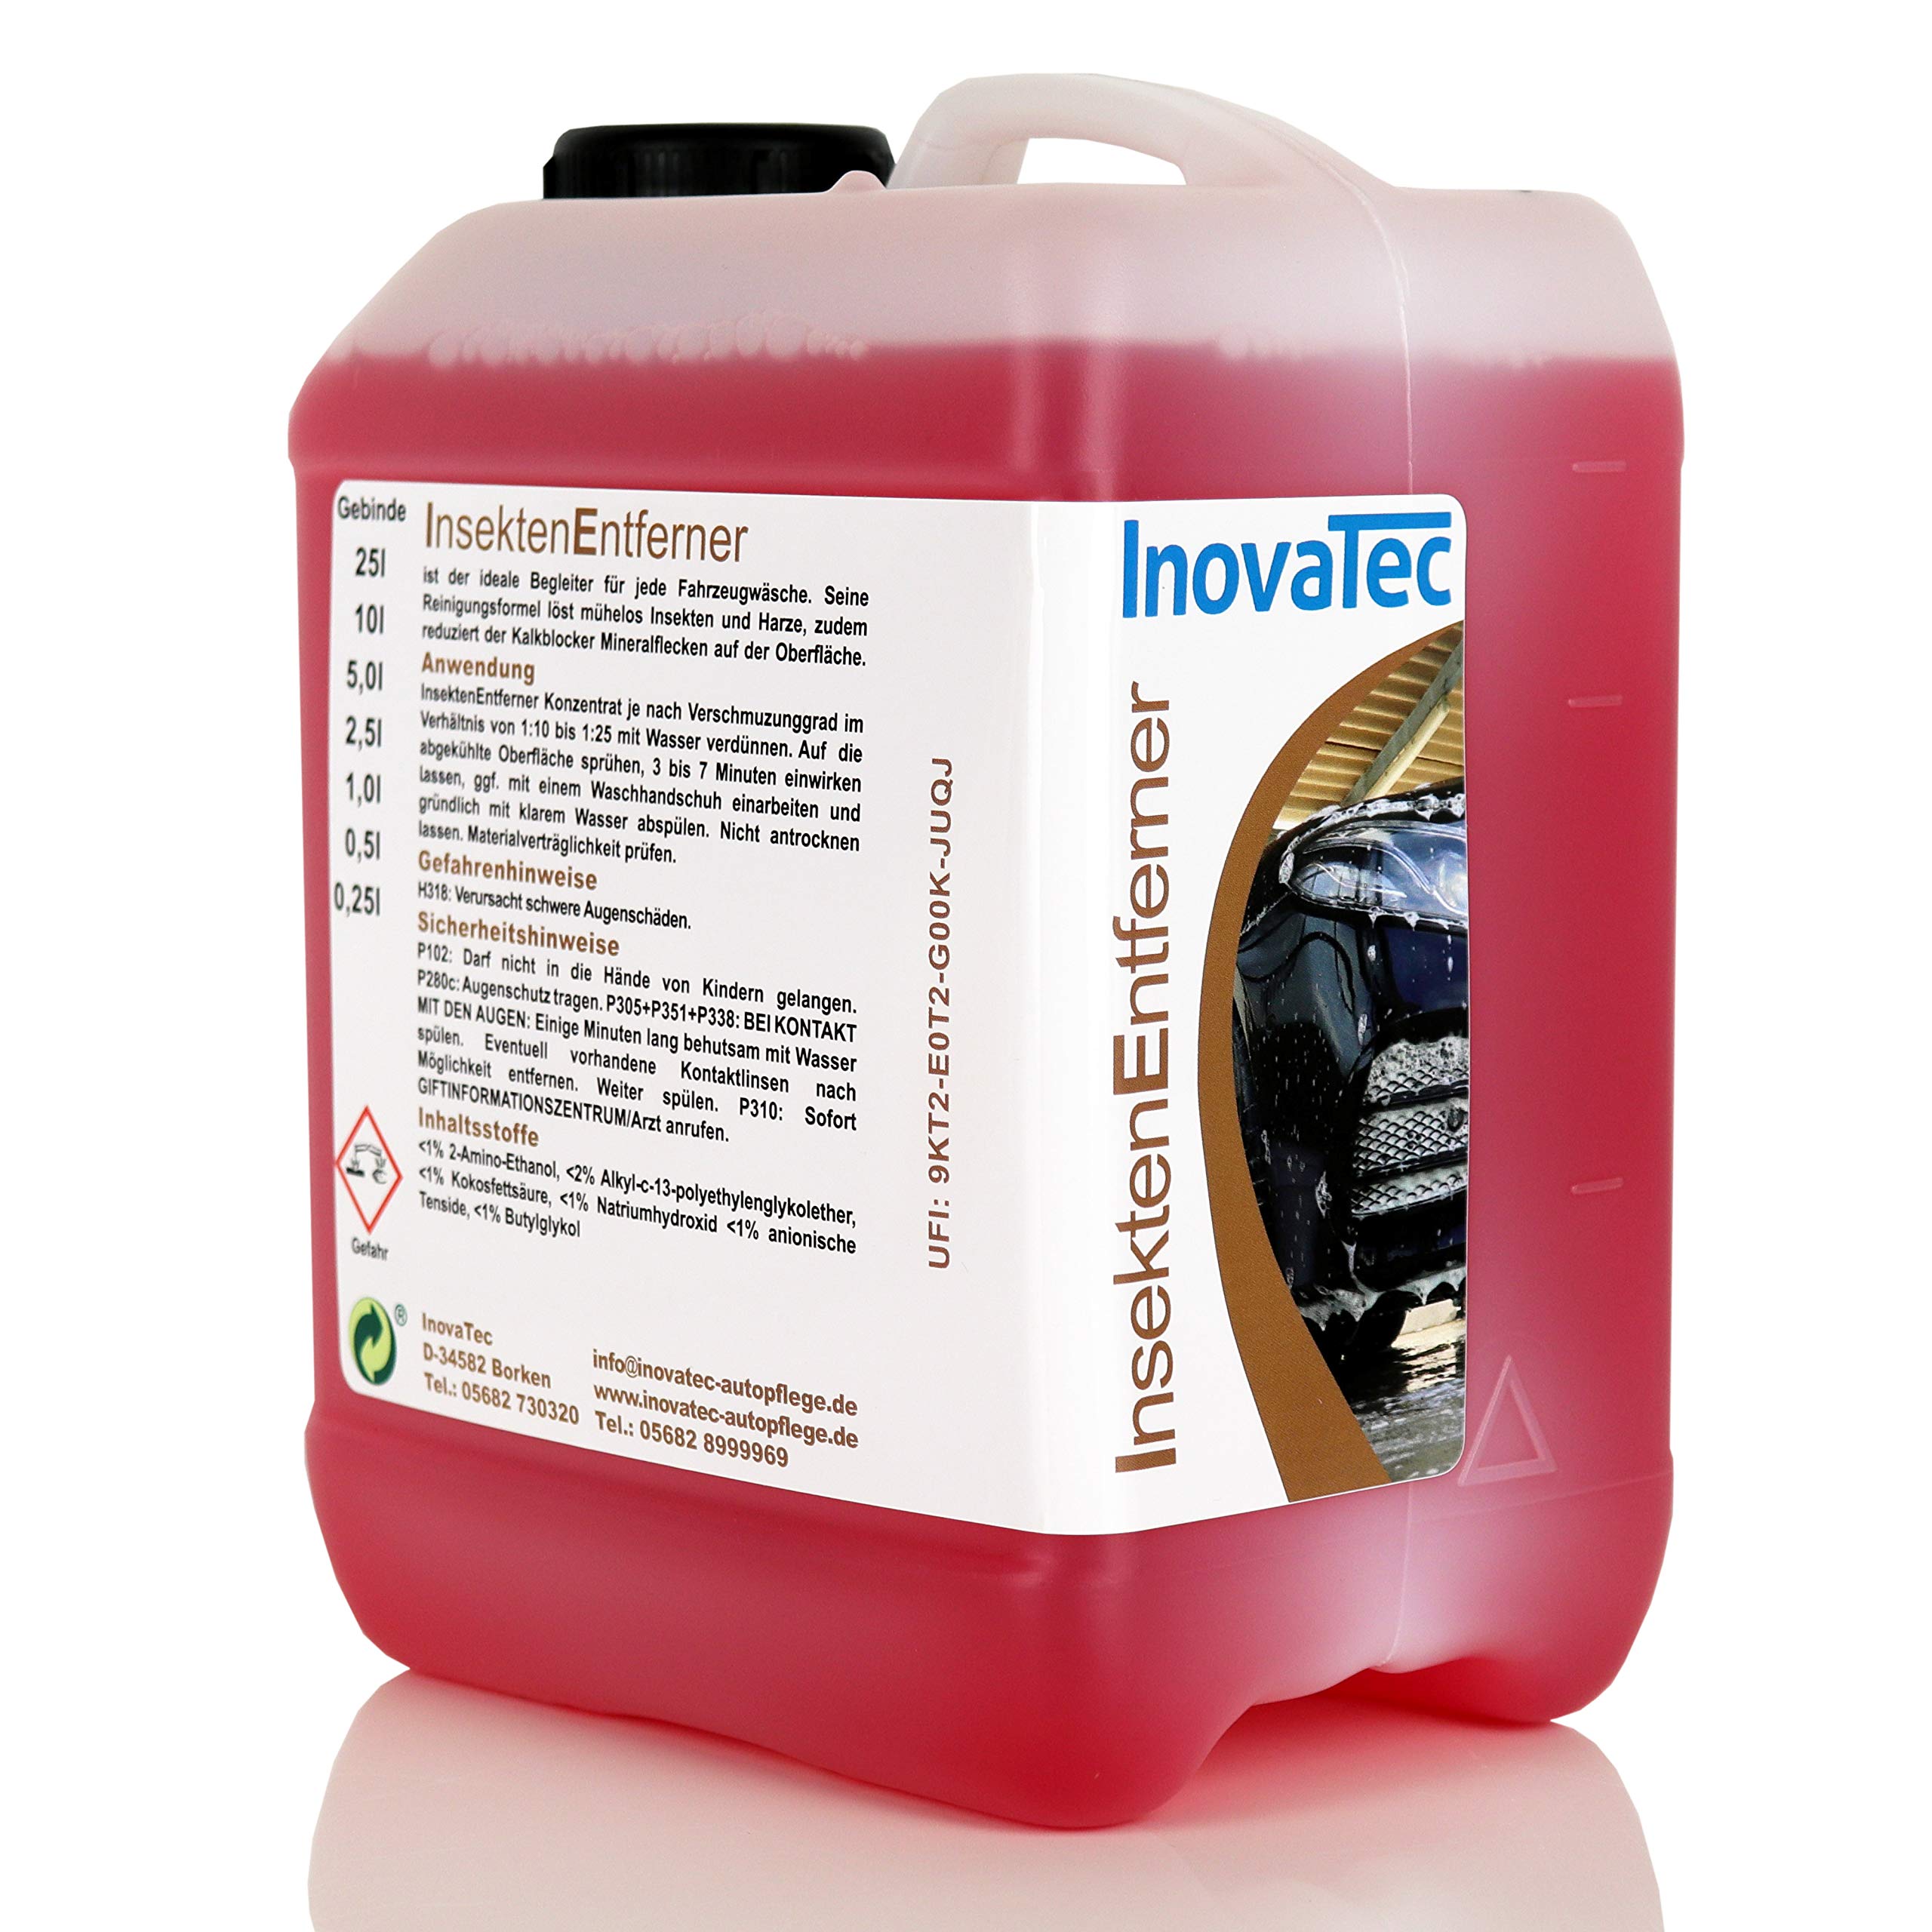 Inovatec Insektenentferner-Konzentrat 10L - Entfernt mühelos Insekten und Harze - Lösungsmittelfrei und biologisch abbaubar